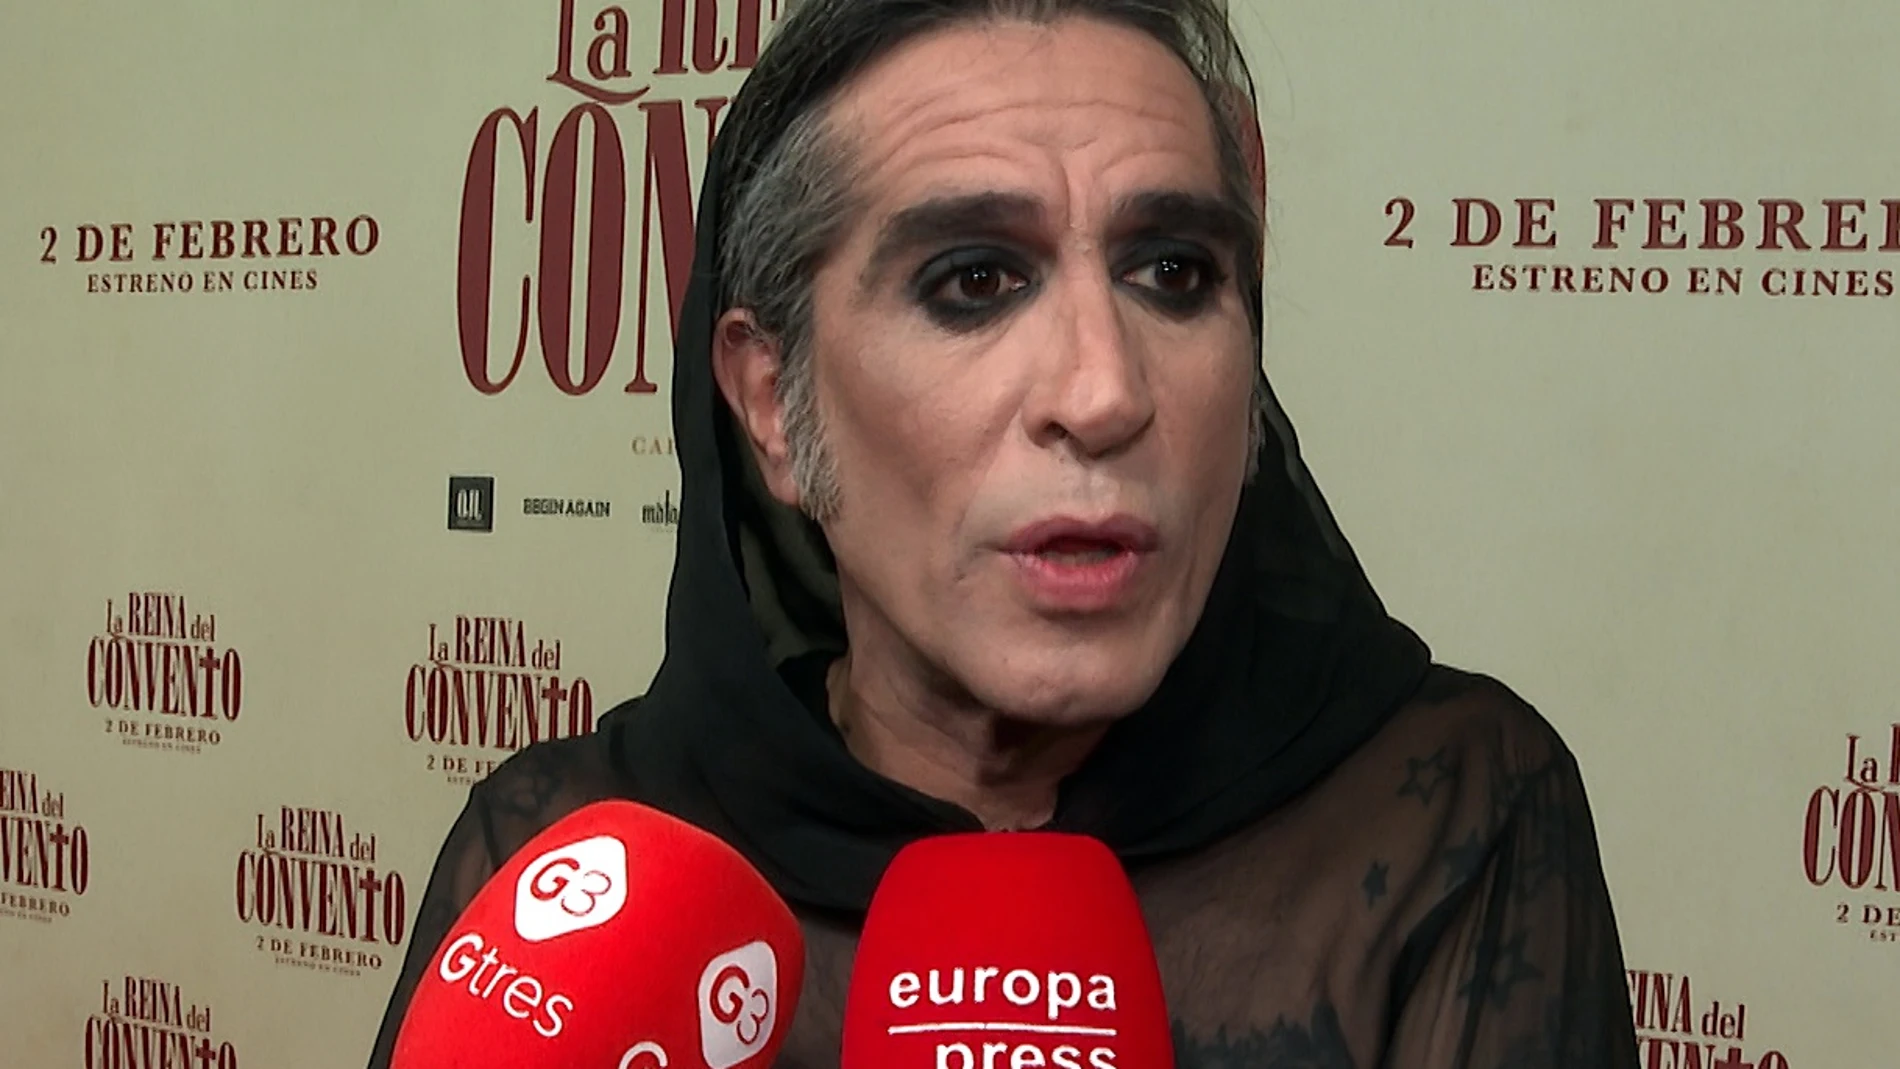 Mario Vaquerizo nos confiesa cómo ha sido meterse en la piel de una monja en la película 'La reina del convento'